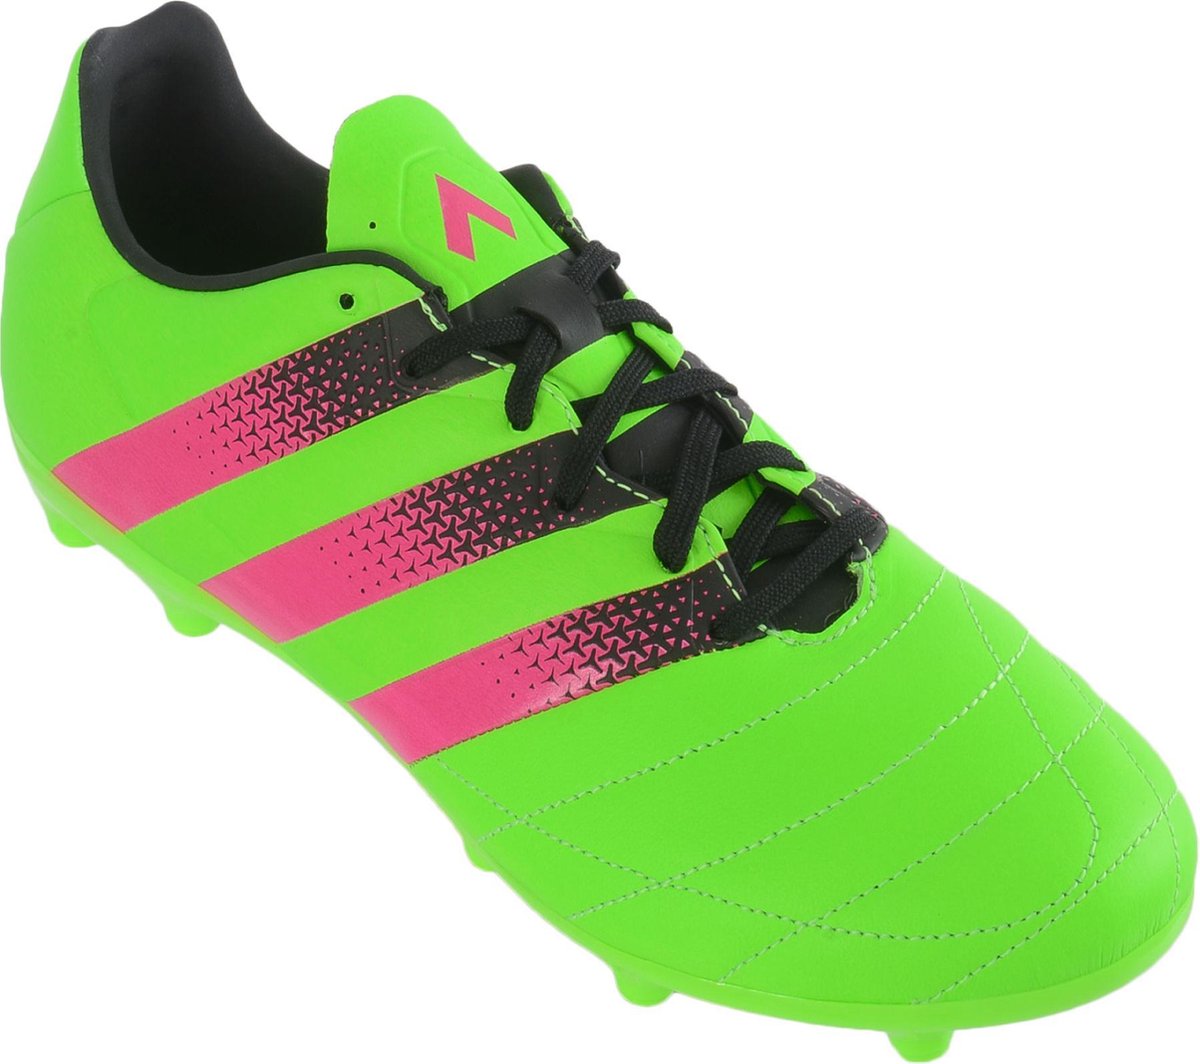 adidas ACE 16.3 FG/AG Voetbalschoenen - Maat 44 - Mannen - groen/roze/zwart  | bol.com